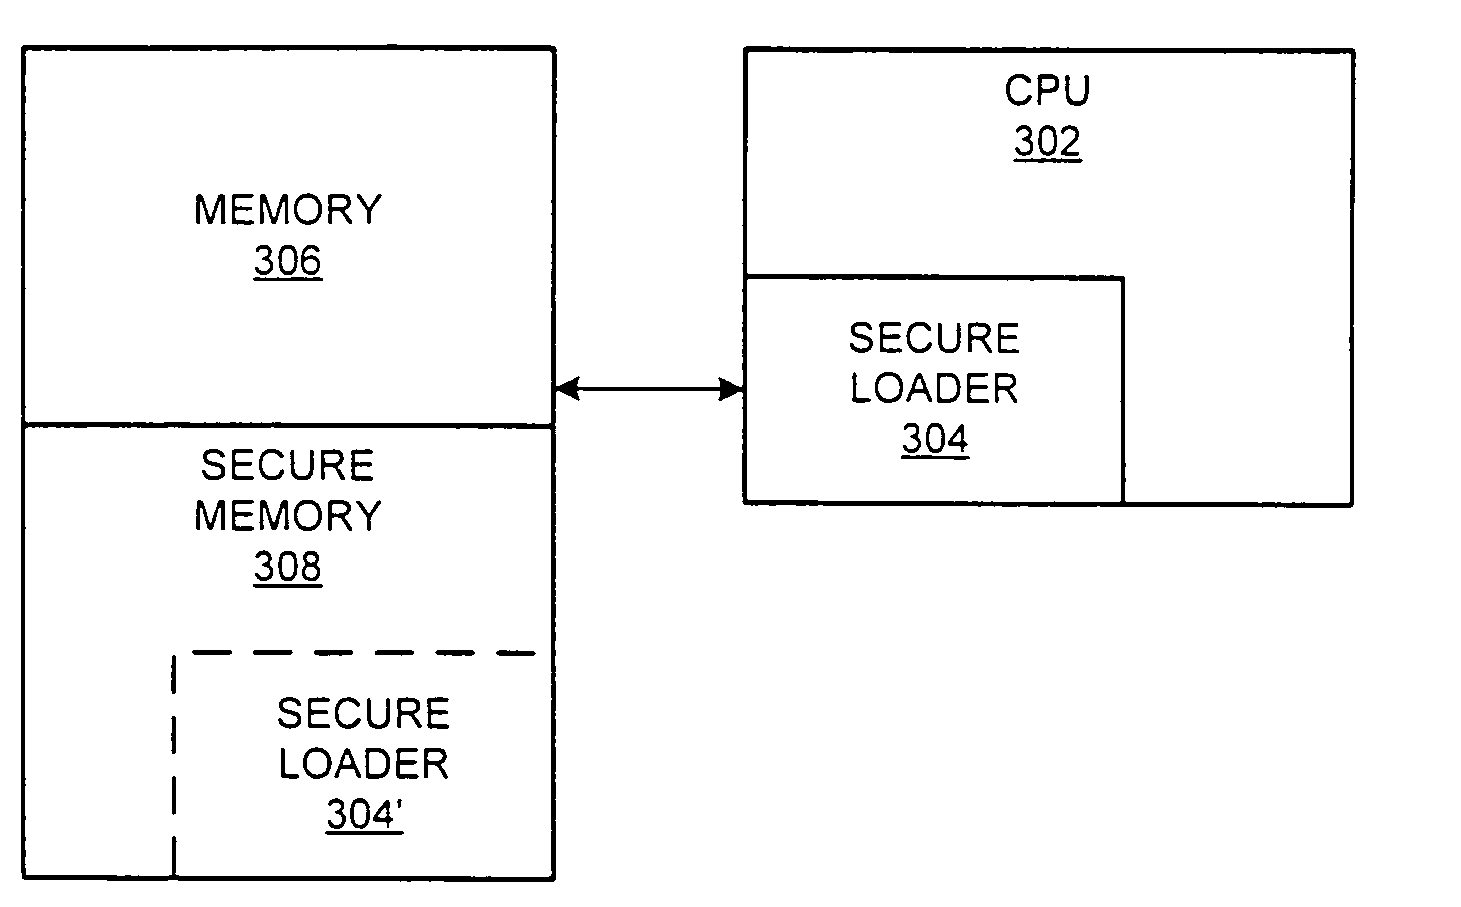 Methods for describing processor features